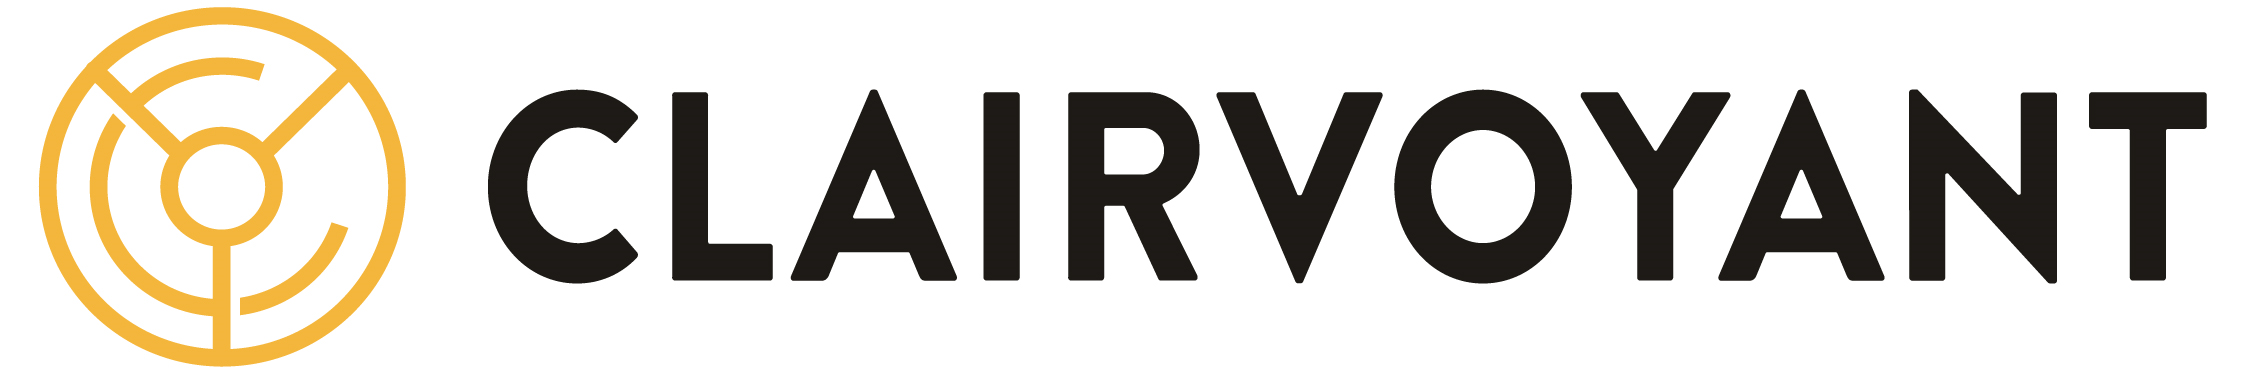 Clairvoyant Company Logo